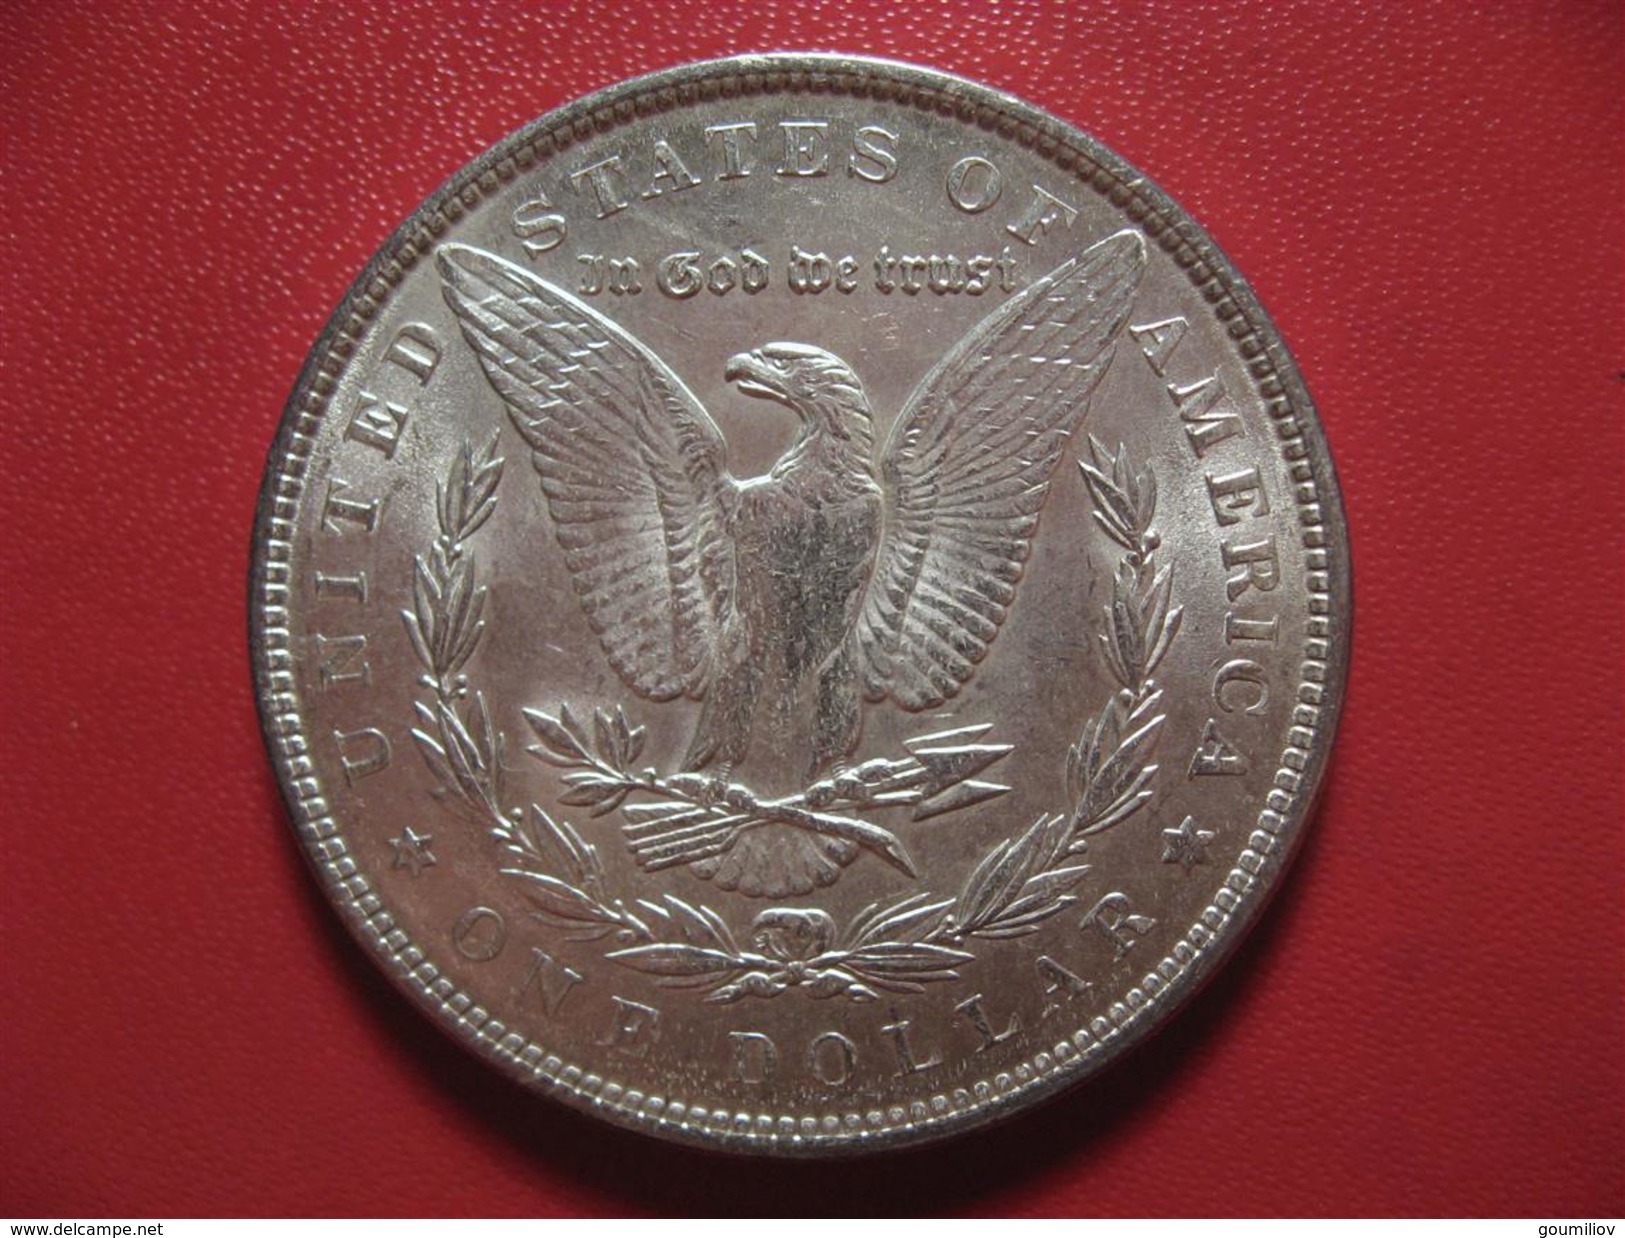 Etats-Unis - USA - One Morgan Dollar 1889 2151 - 1878-1921: Morgan